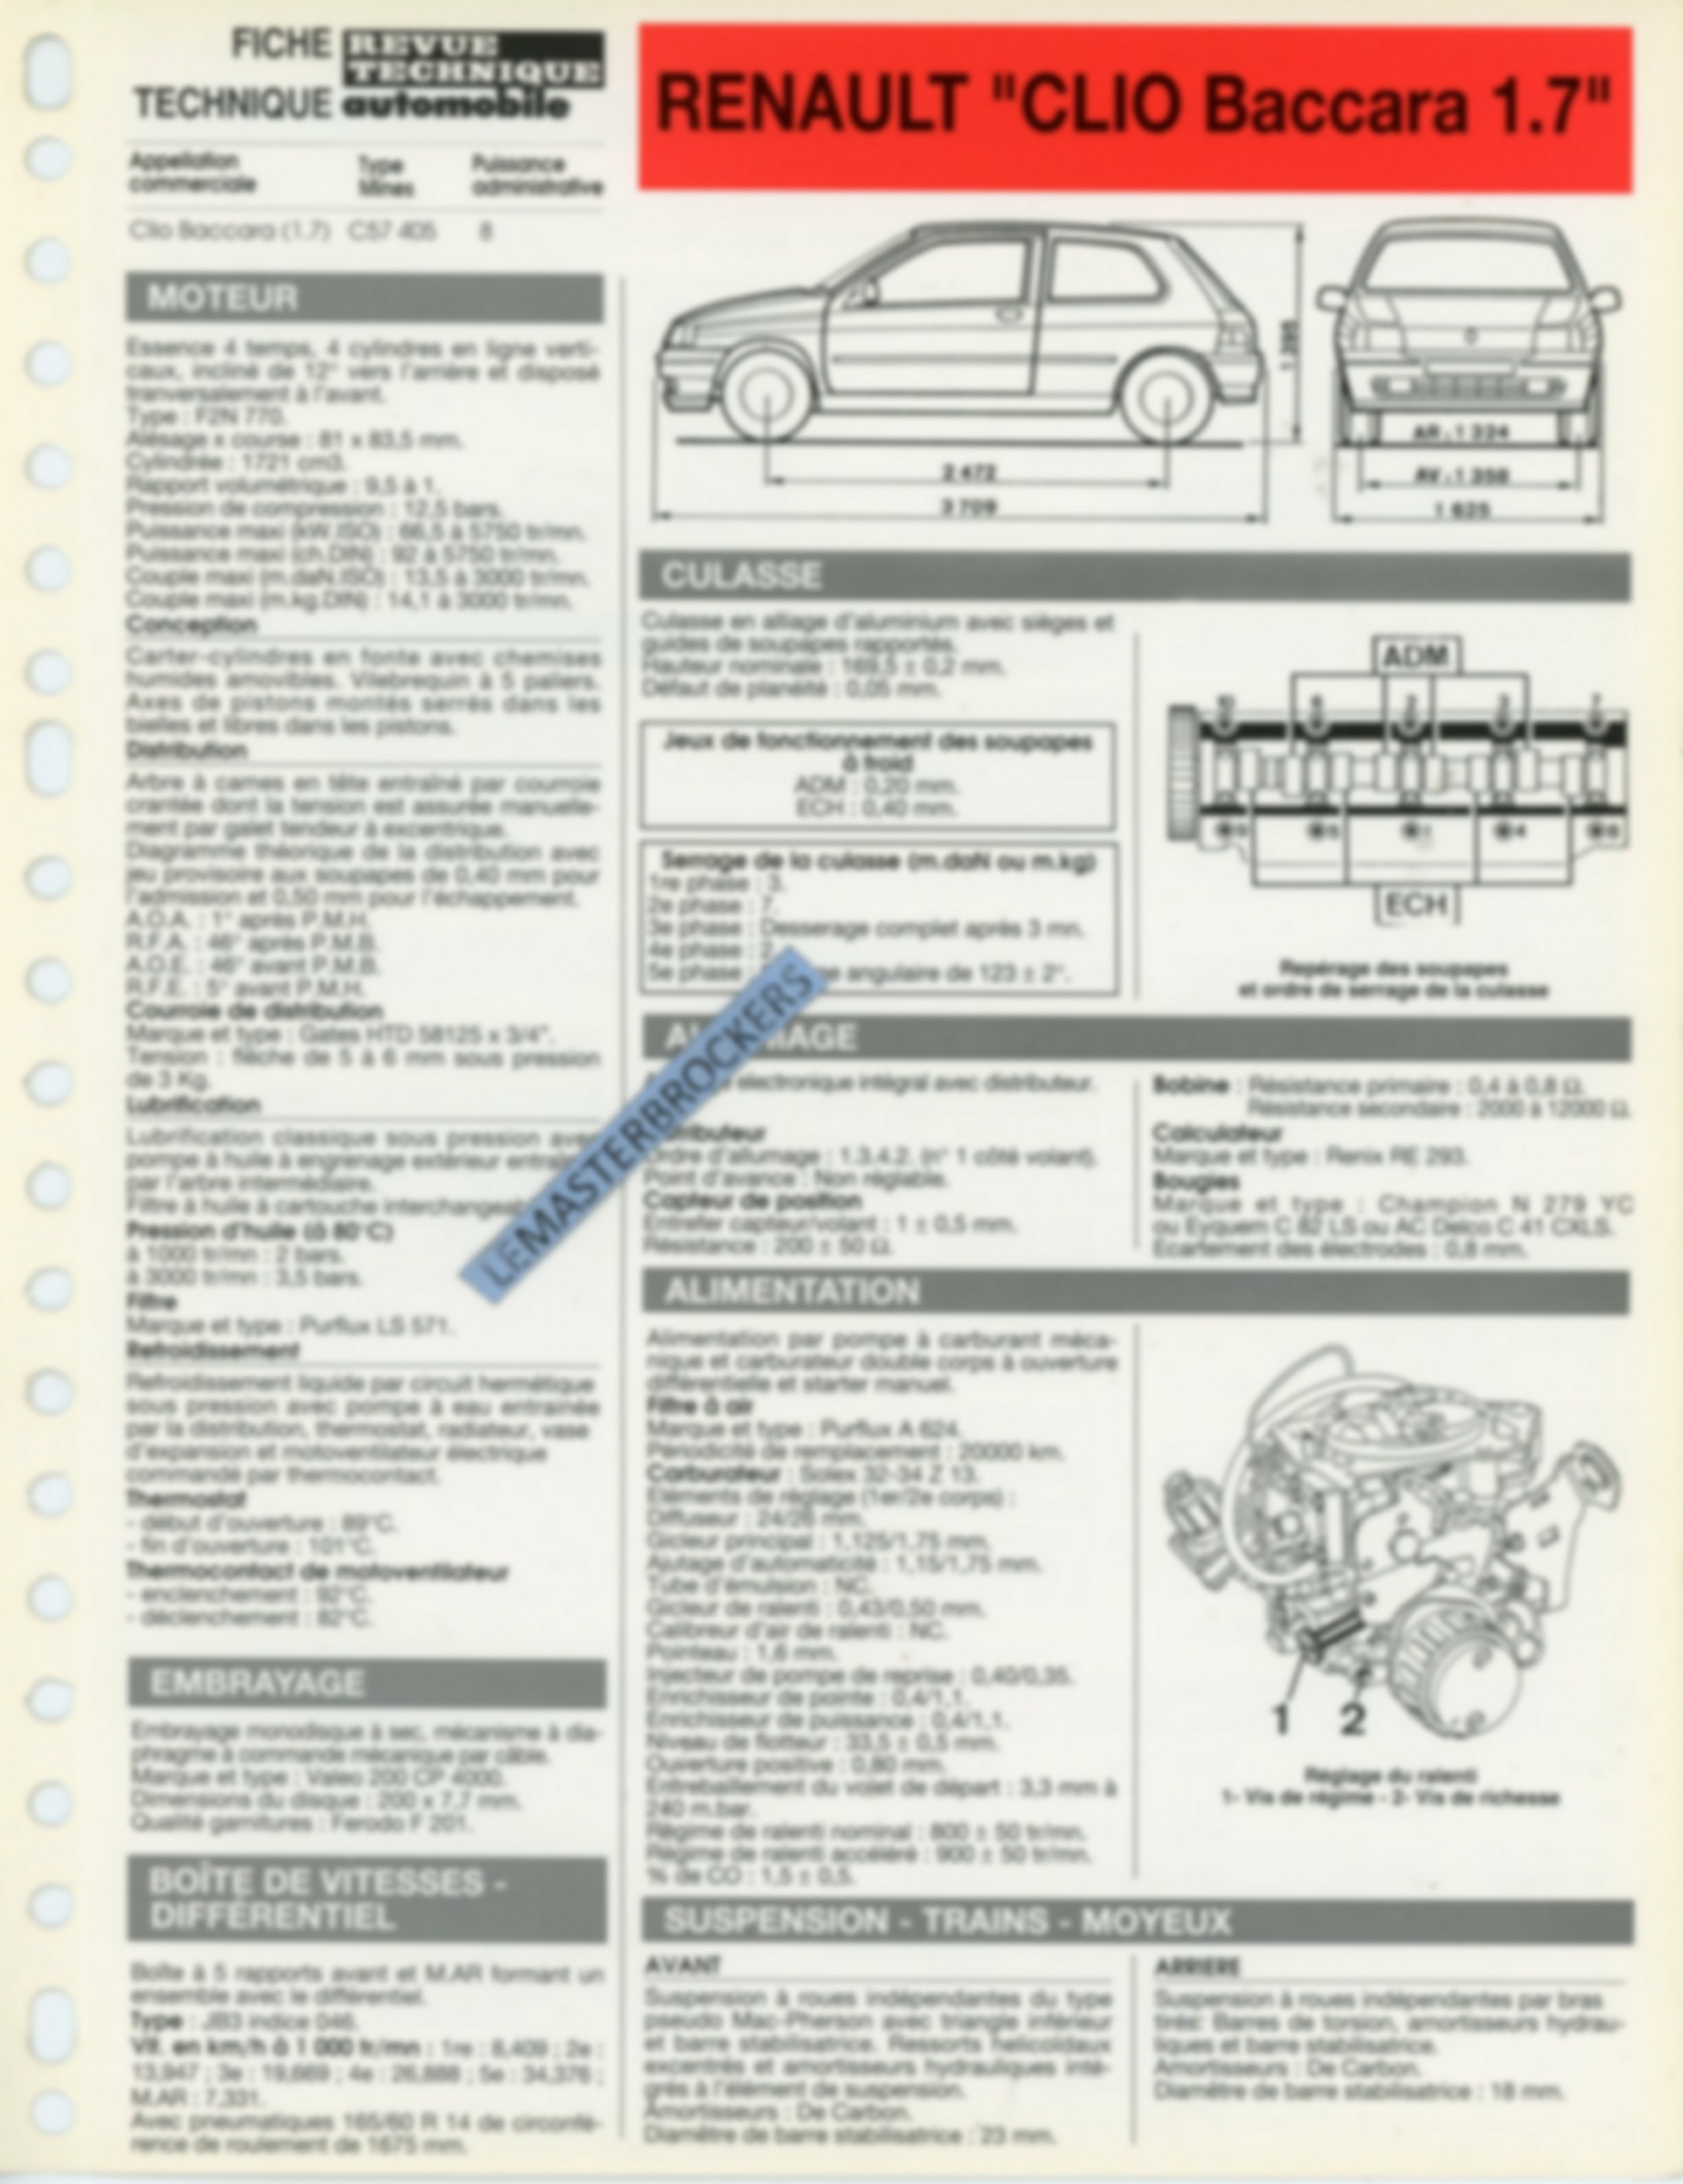 FICHE-TECHNIQUE-RENAULT-CLIO-BACCARA-1992-FICHE-RTA-AUTO-LEMASTERBROCKERS